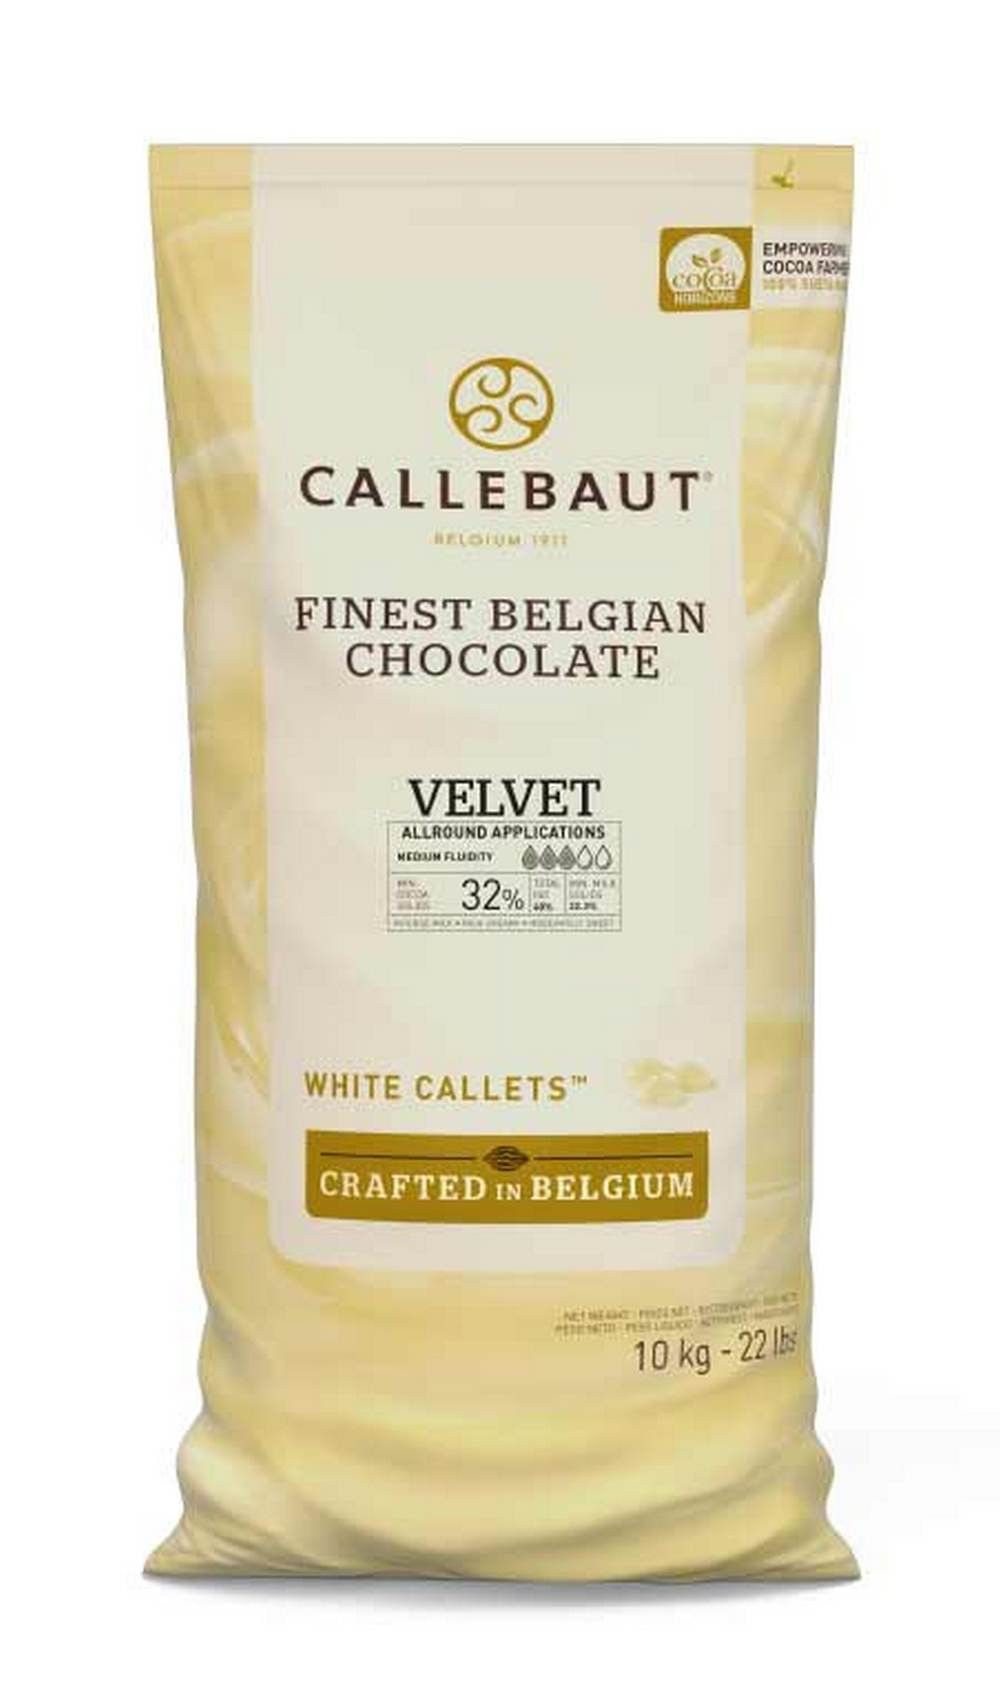 ⋗ Шоколад бельгийский Callebaut белый 32% в дисках, 10 кг купить в Украине ➛ CakeShop.com.ua, фото